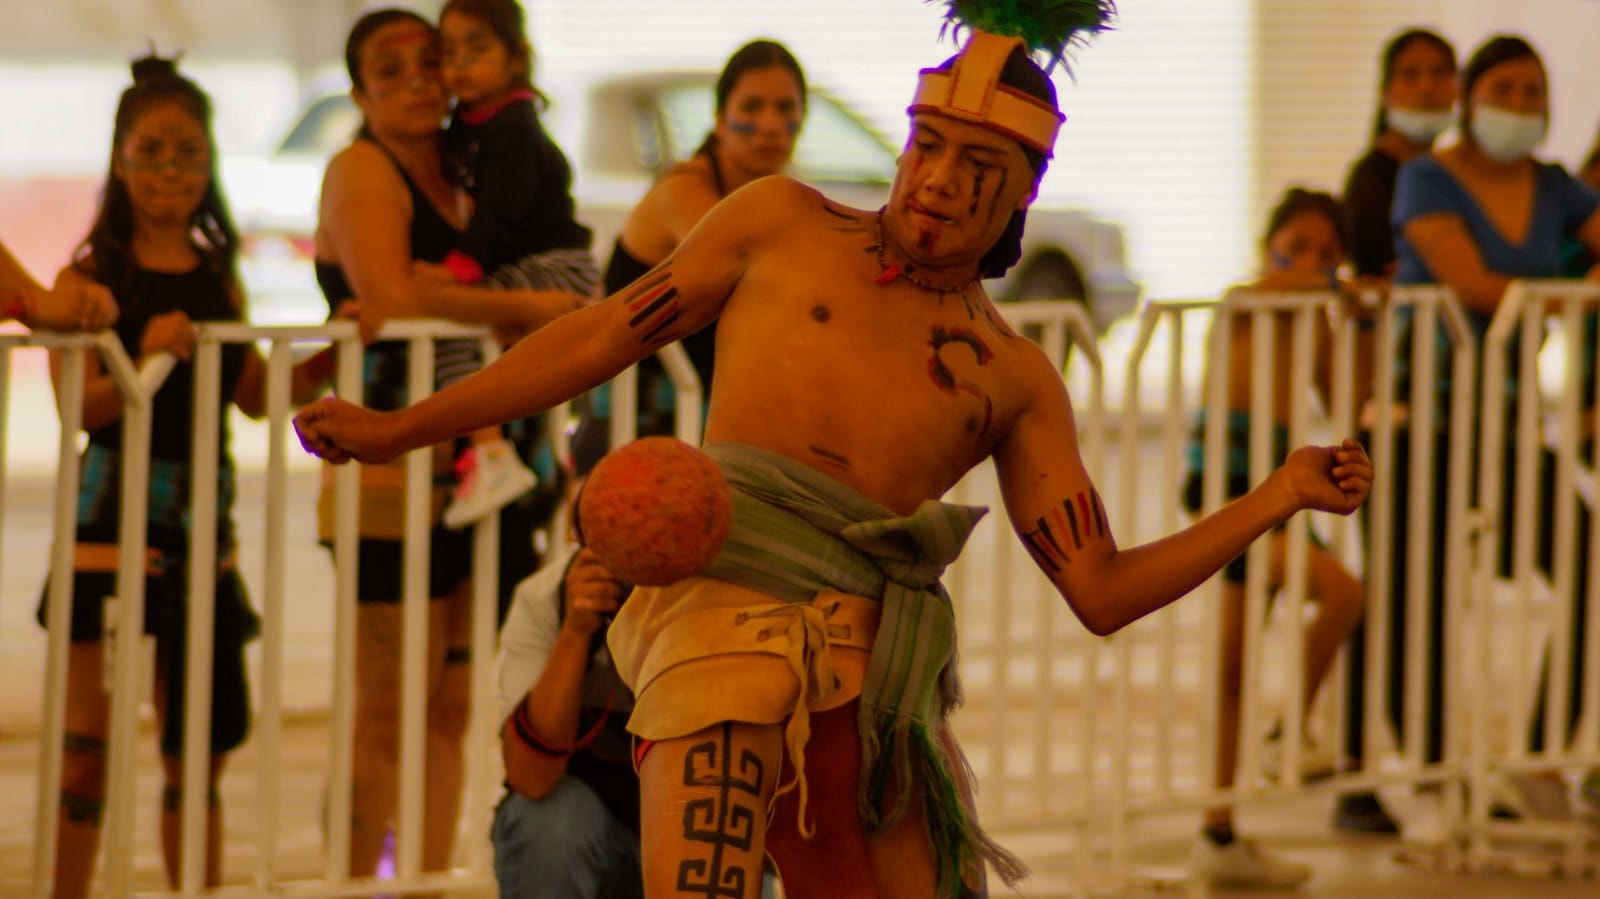 juego de pelota de cadera Festival del Folclor Internacional Zacatecas